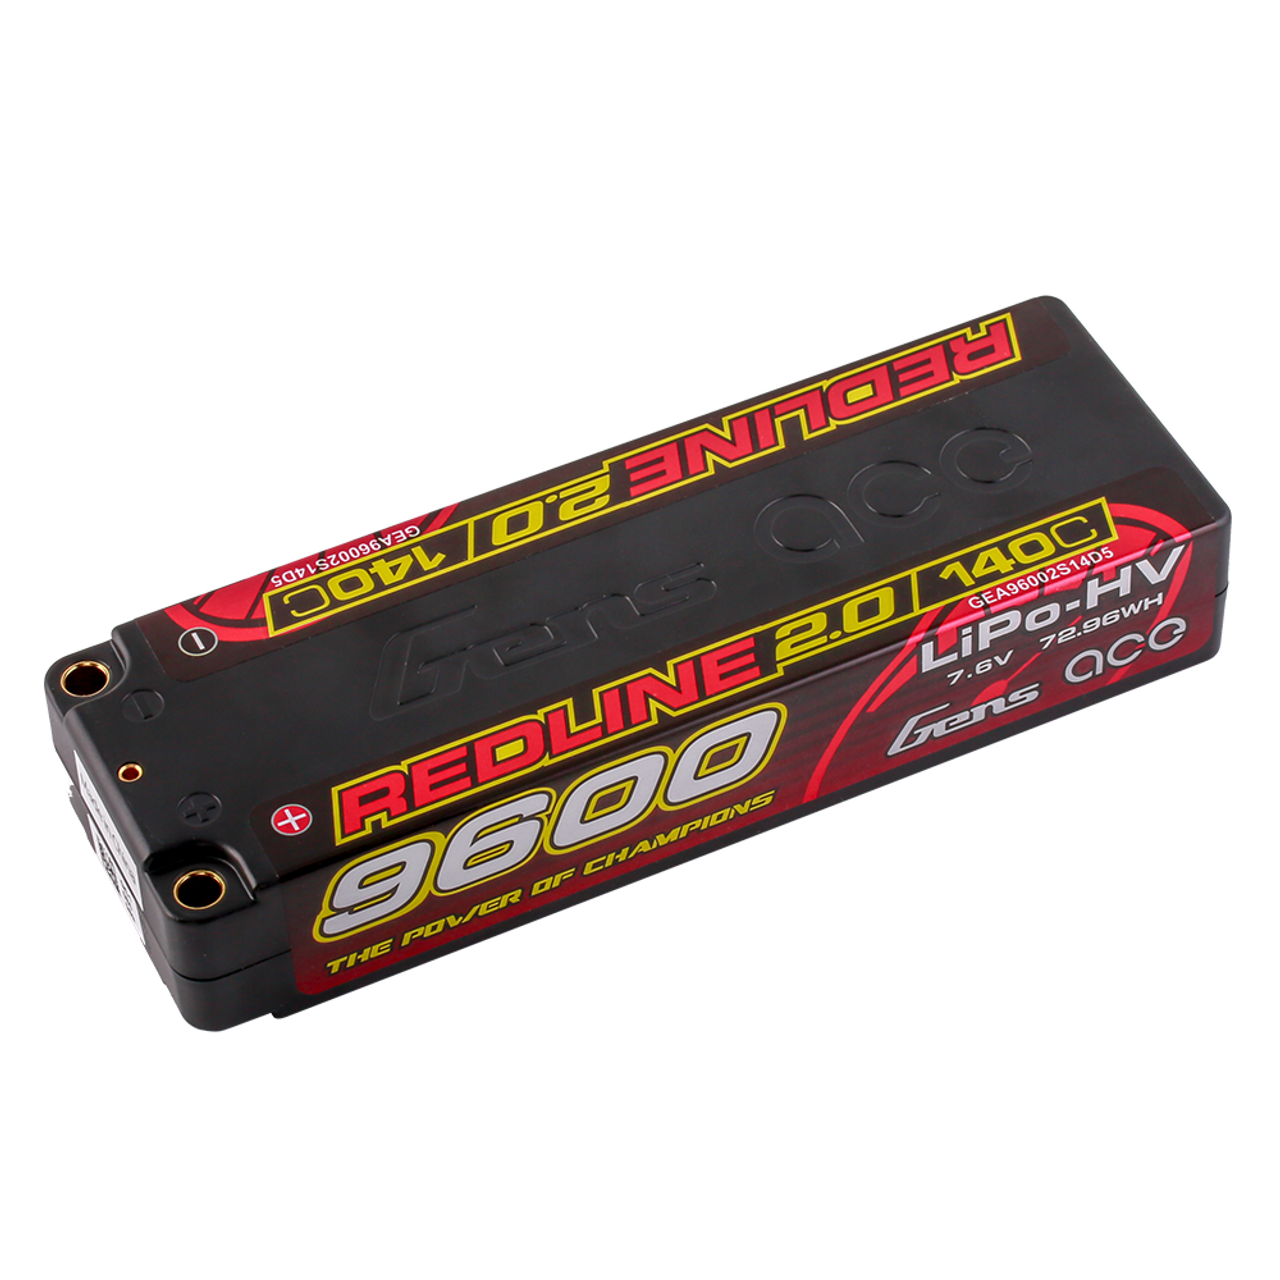 Gens Ace 9600mAh 2S 7.6V 140C HardCase 58# Redline 2.0 Series Lipo Battery With 5.0mm Bullet